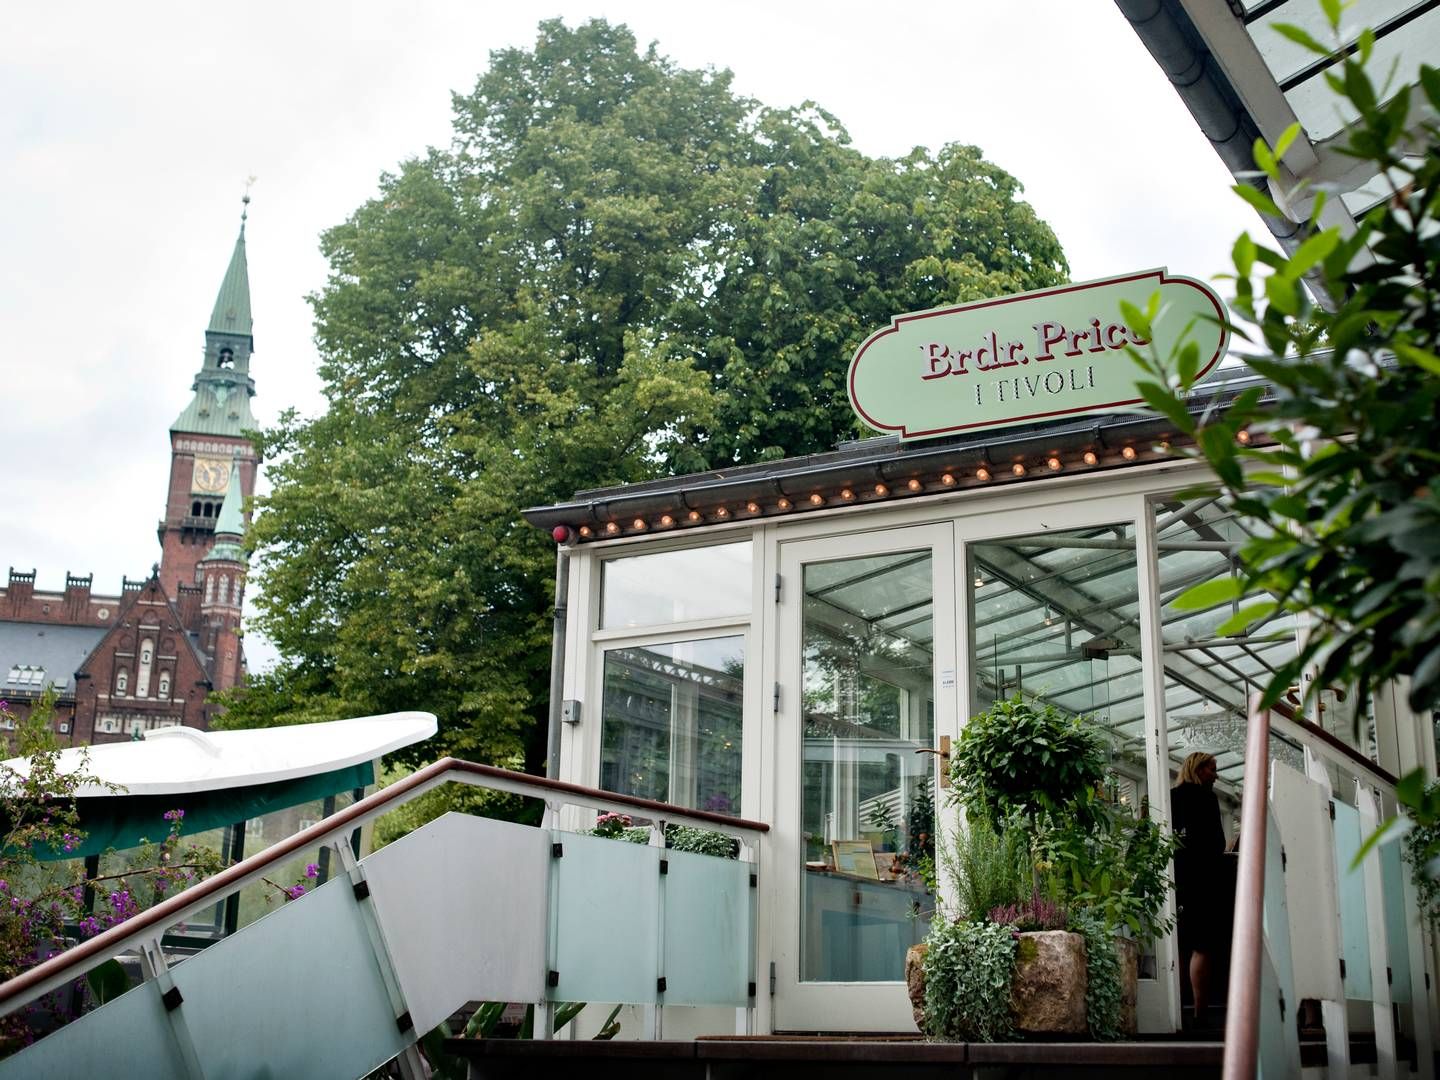 Restaurant Brdr. Price i Tivoli | Photo: Liv Høybye